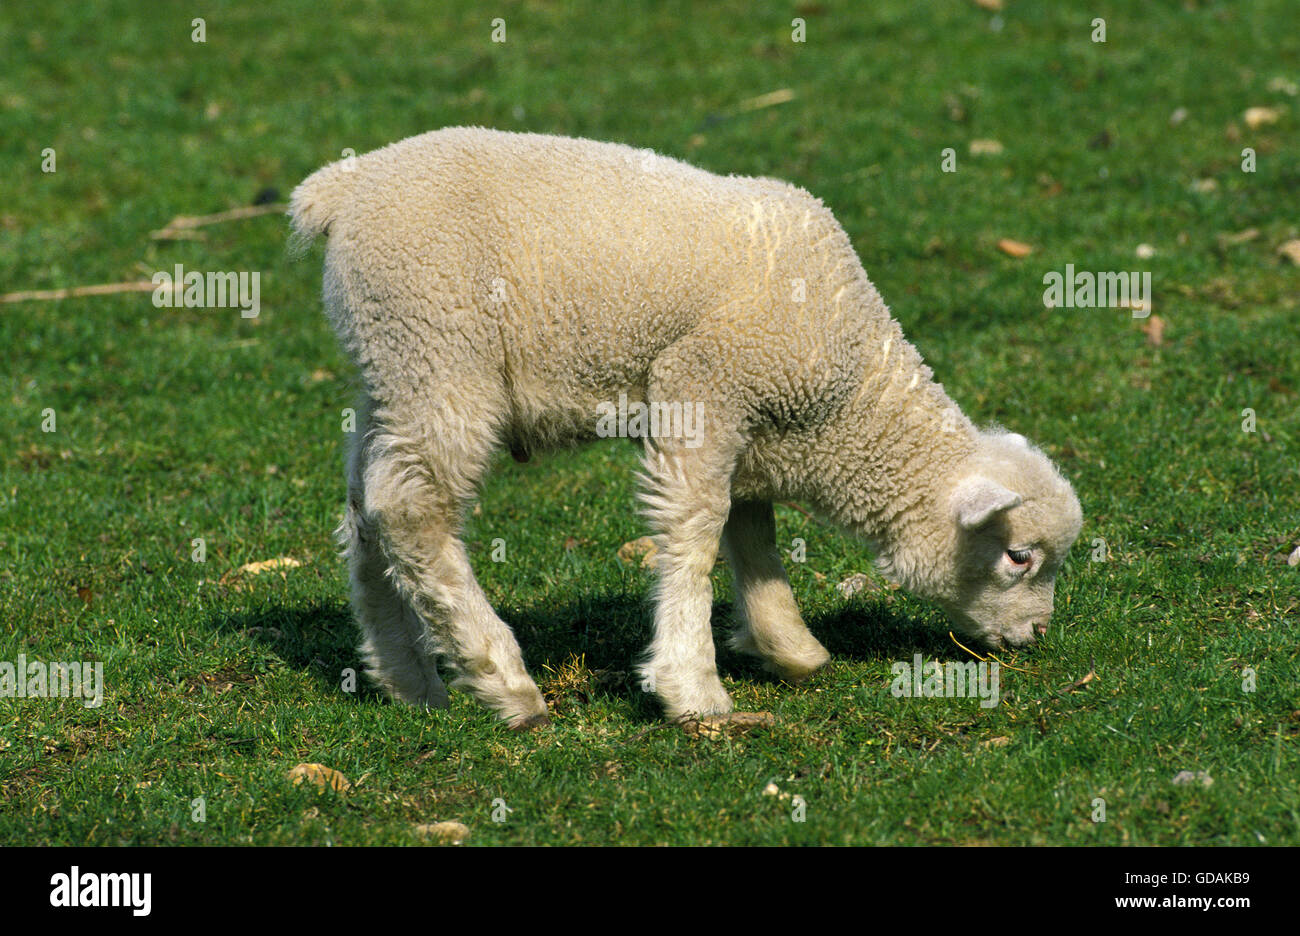 Ile de France ovejas domésticas, una raza francesa, Cordero comiendo hierba Foto de stock